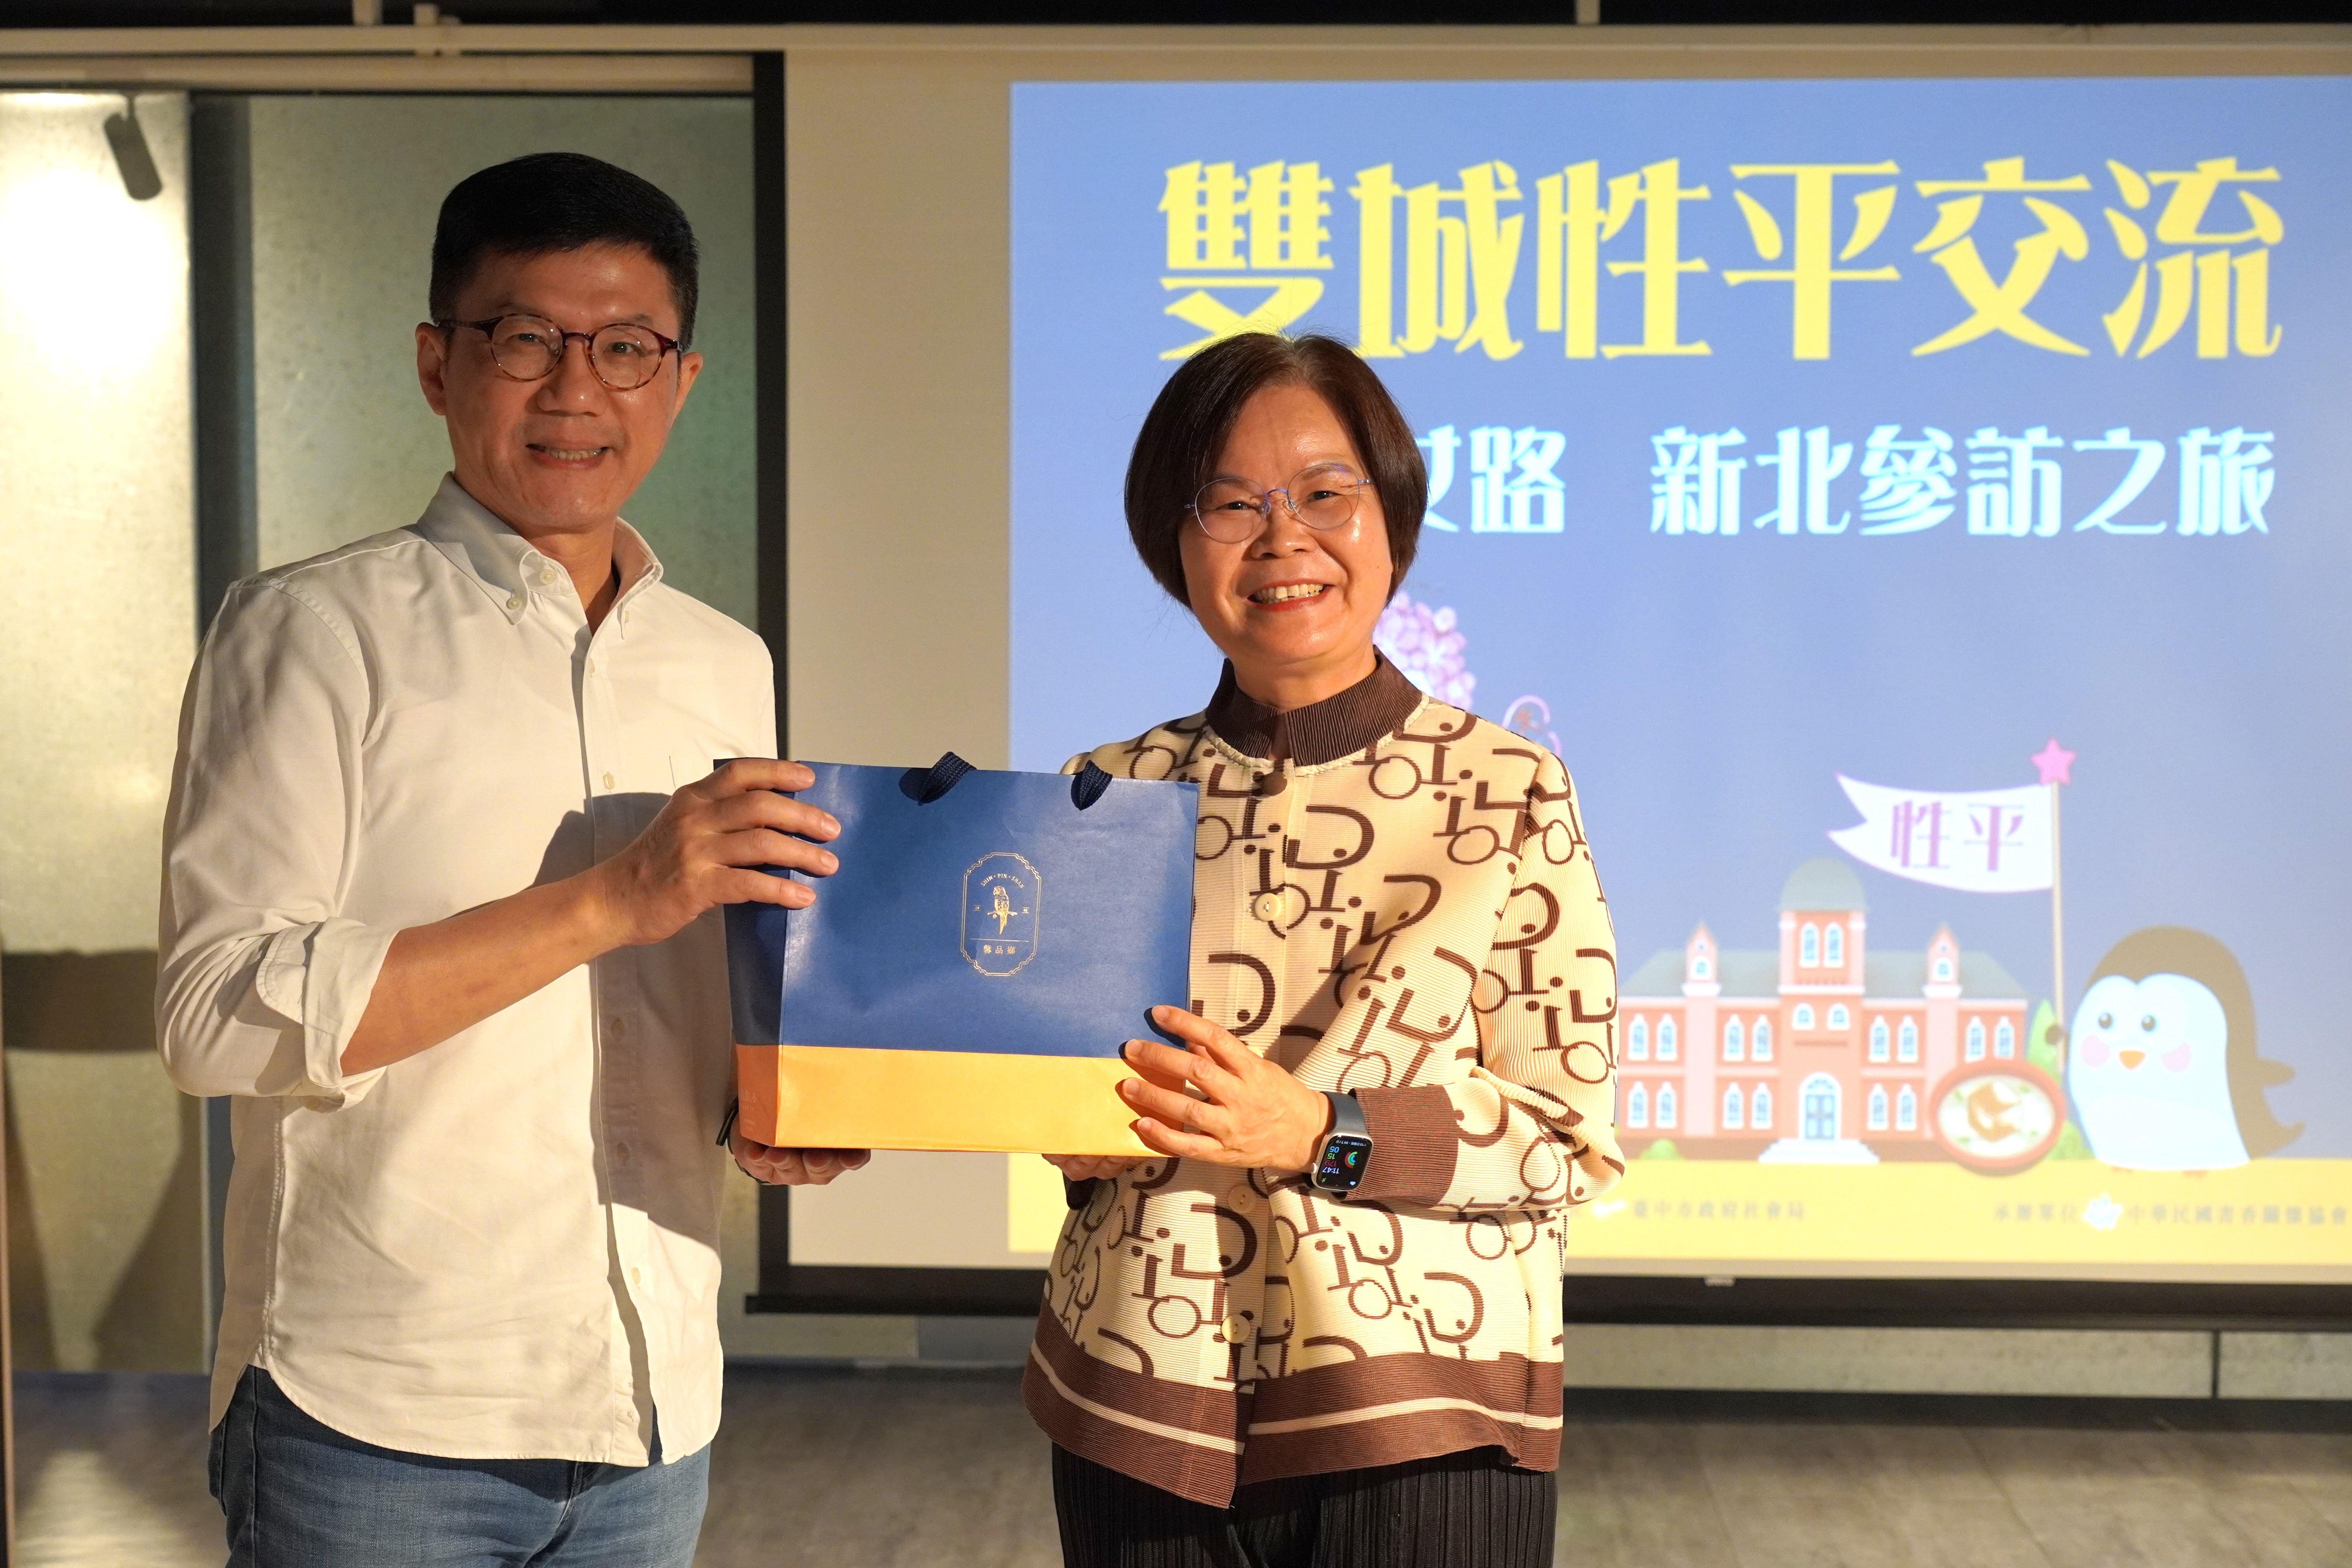 新北市政府副秘書長張其強(左)與台中市政府參事林月棗(右)互贈伴手禮。